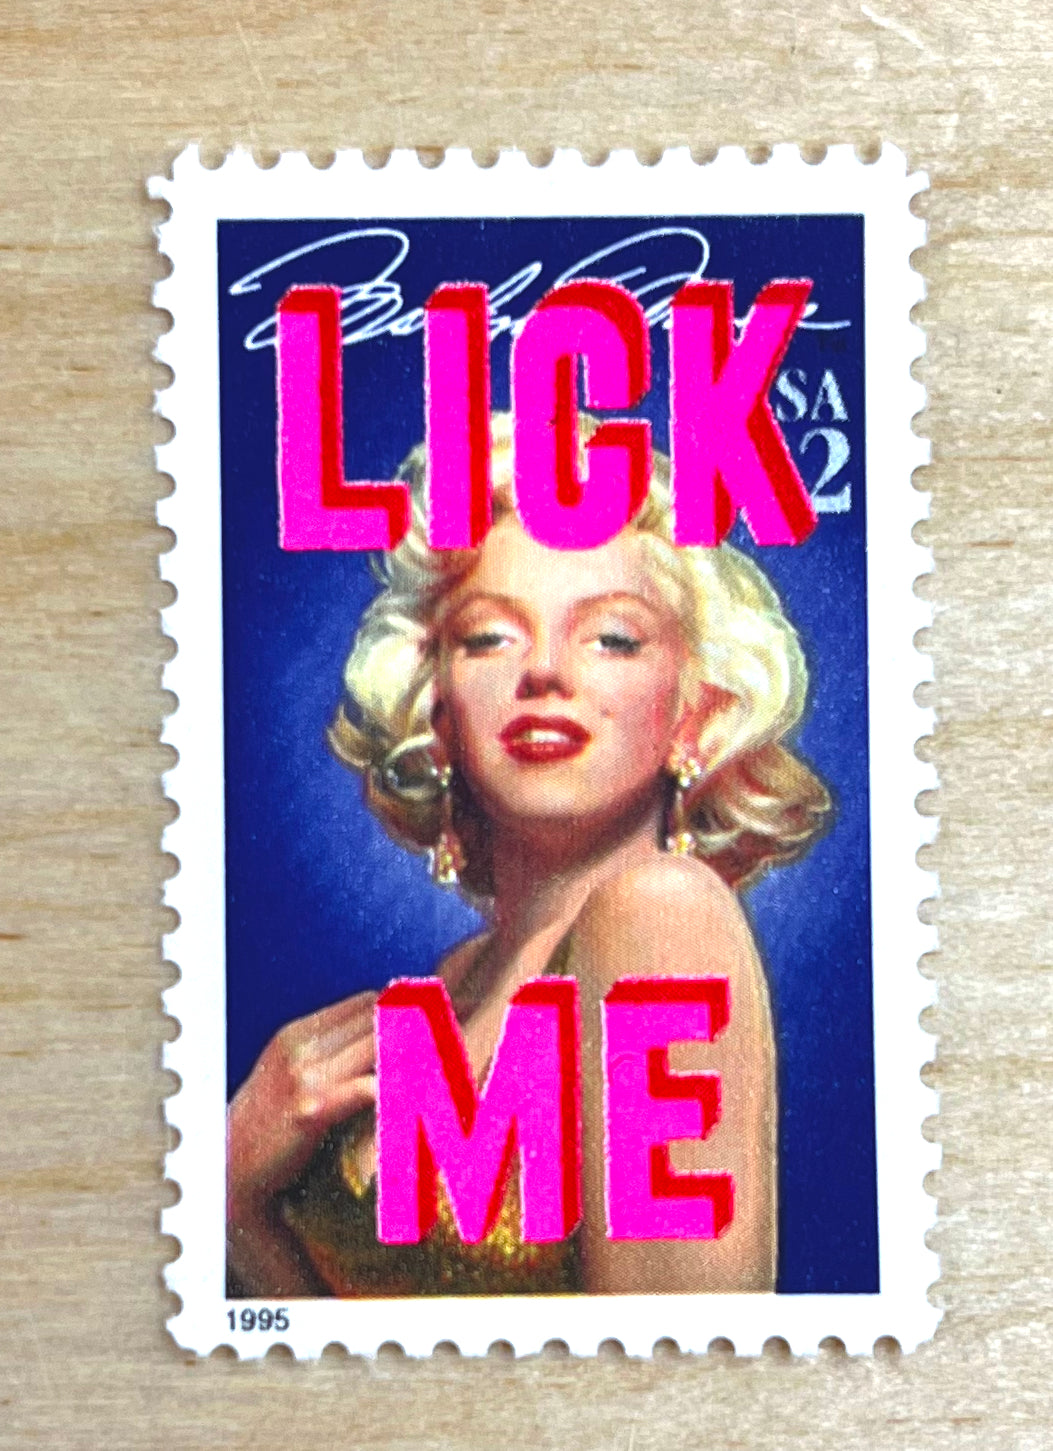 Lick Me by Dave Buonaguidi